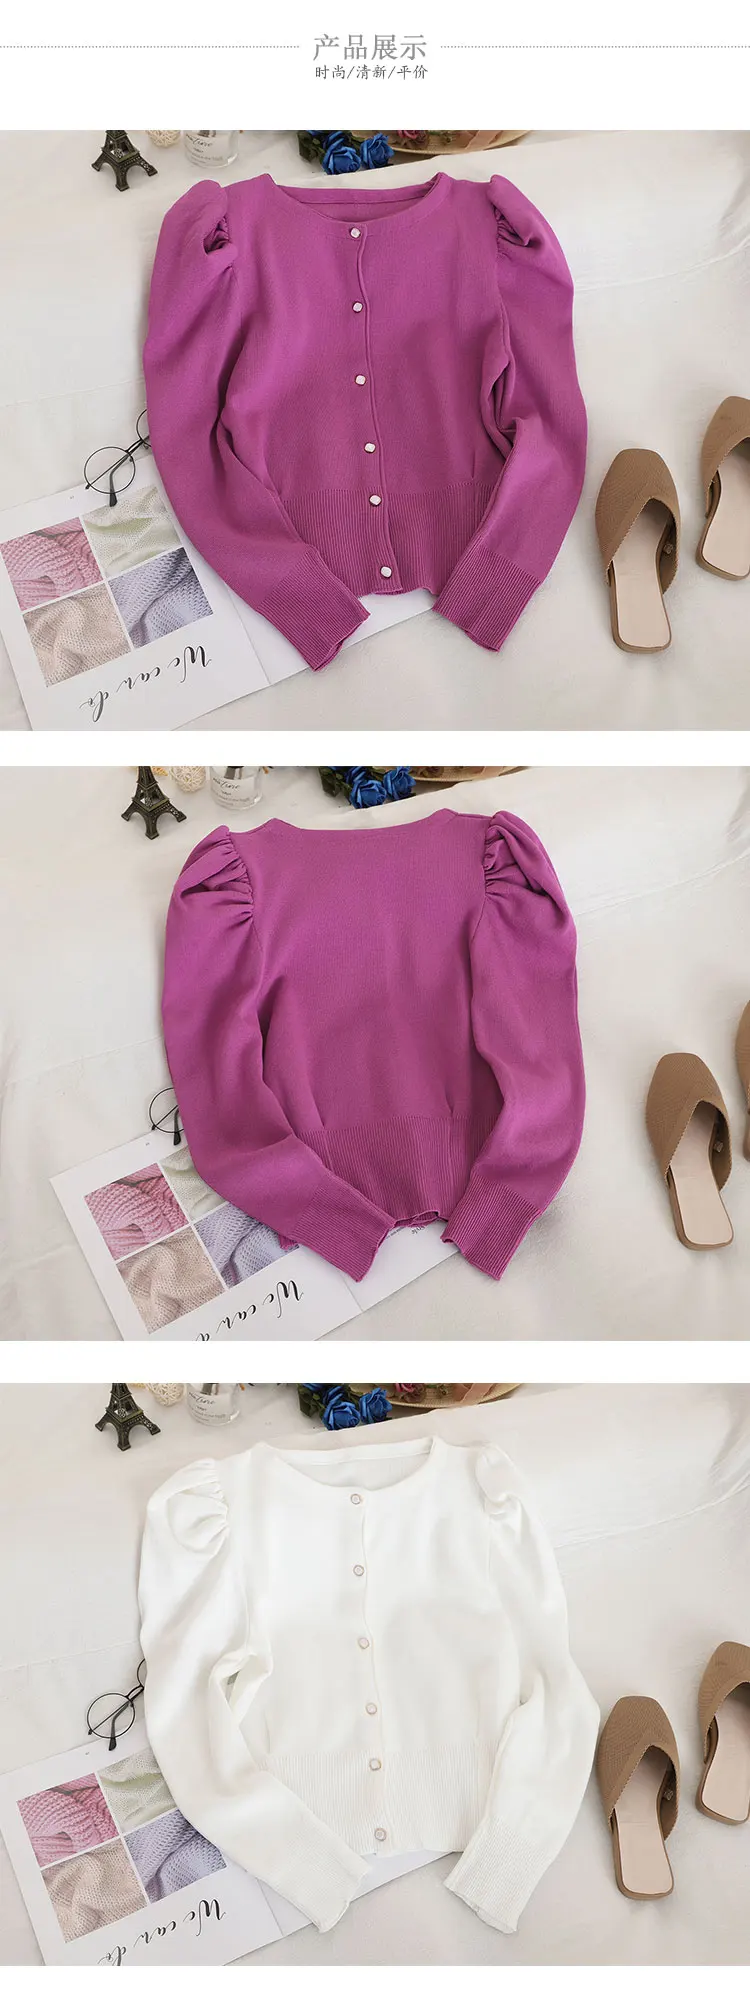 Woherb Новое поступление Элегантный женский свитер Одноцветный однобортный короткий кардиган корейская мода Трикотаж Топы 91149